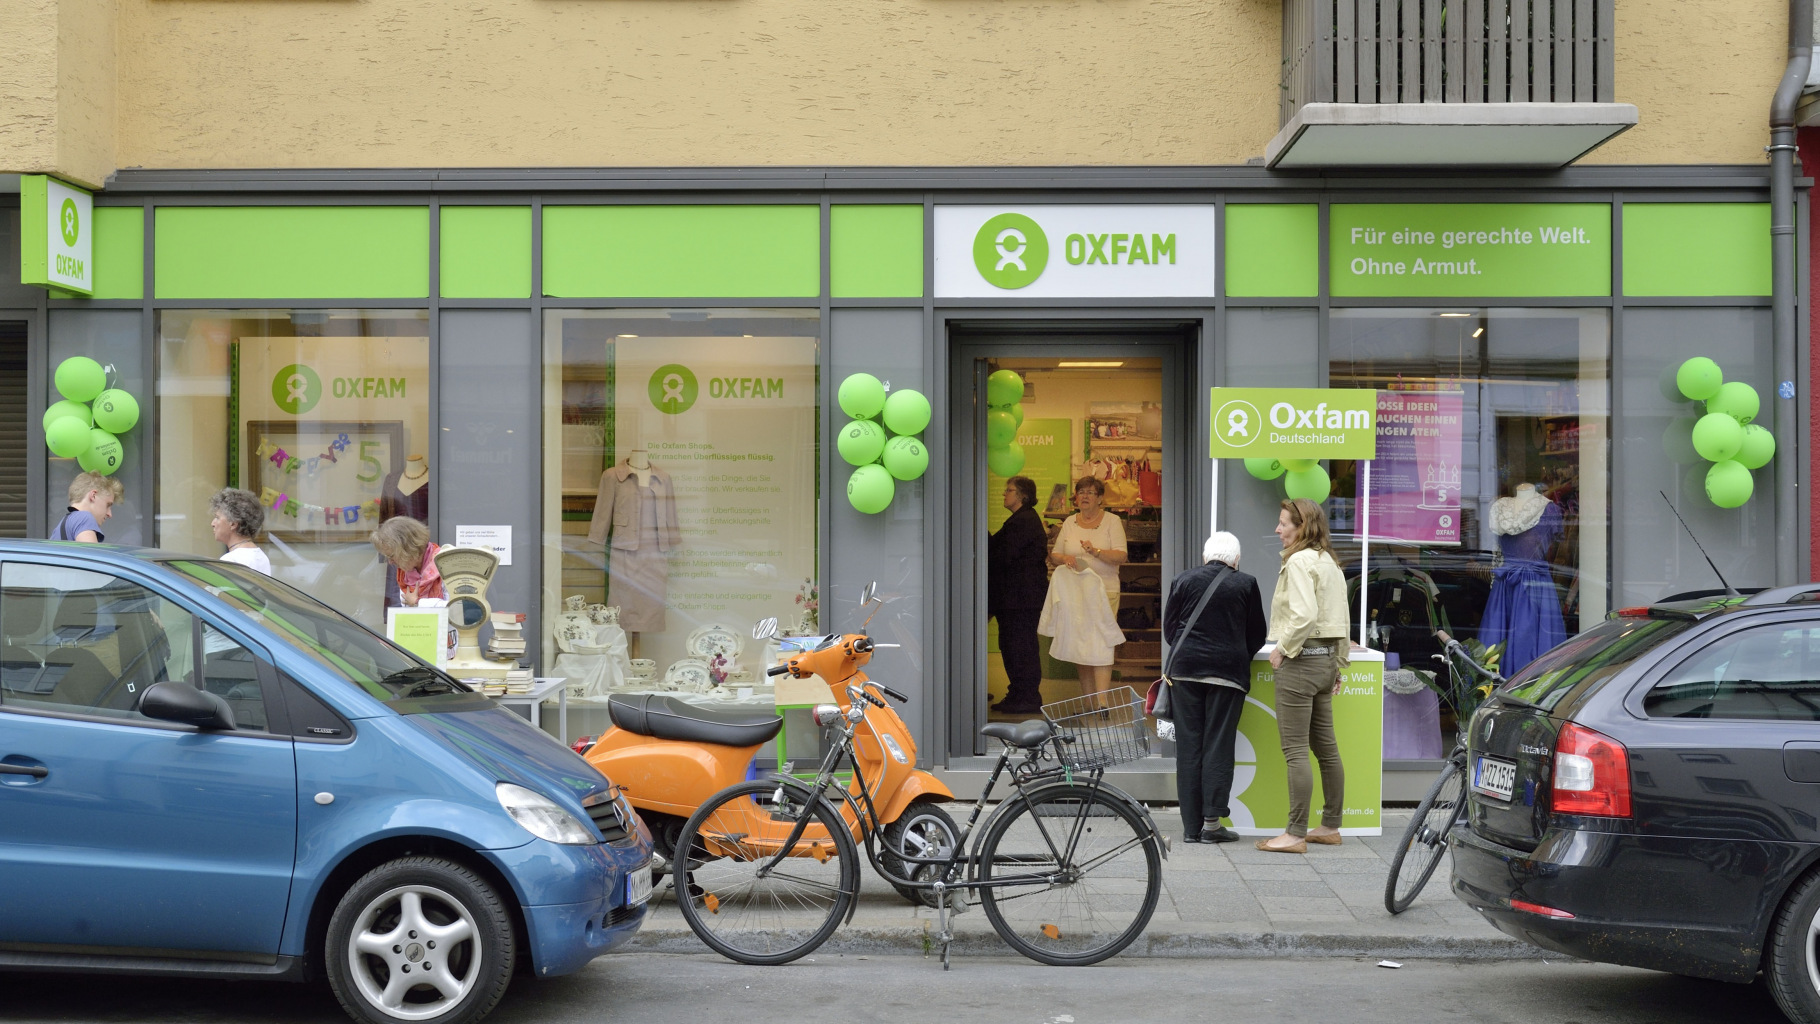 Oxfam Shop München-Maxvorstadt - Außenansicht